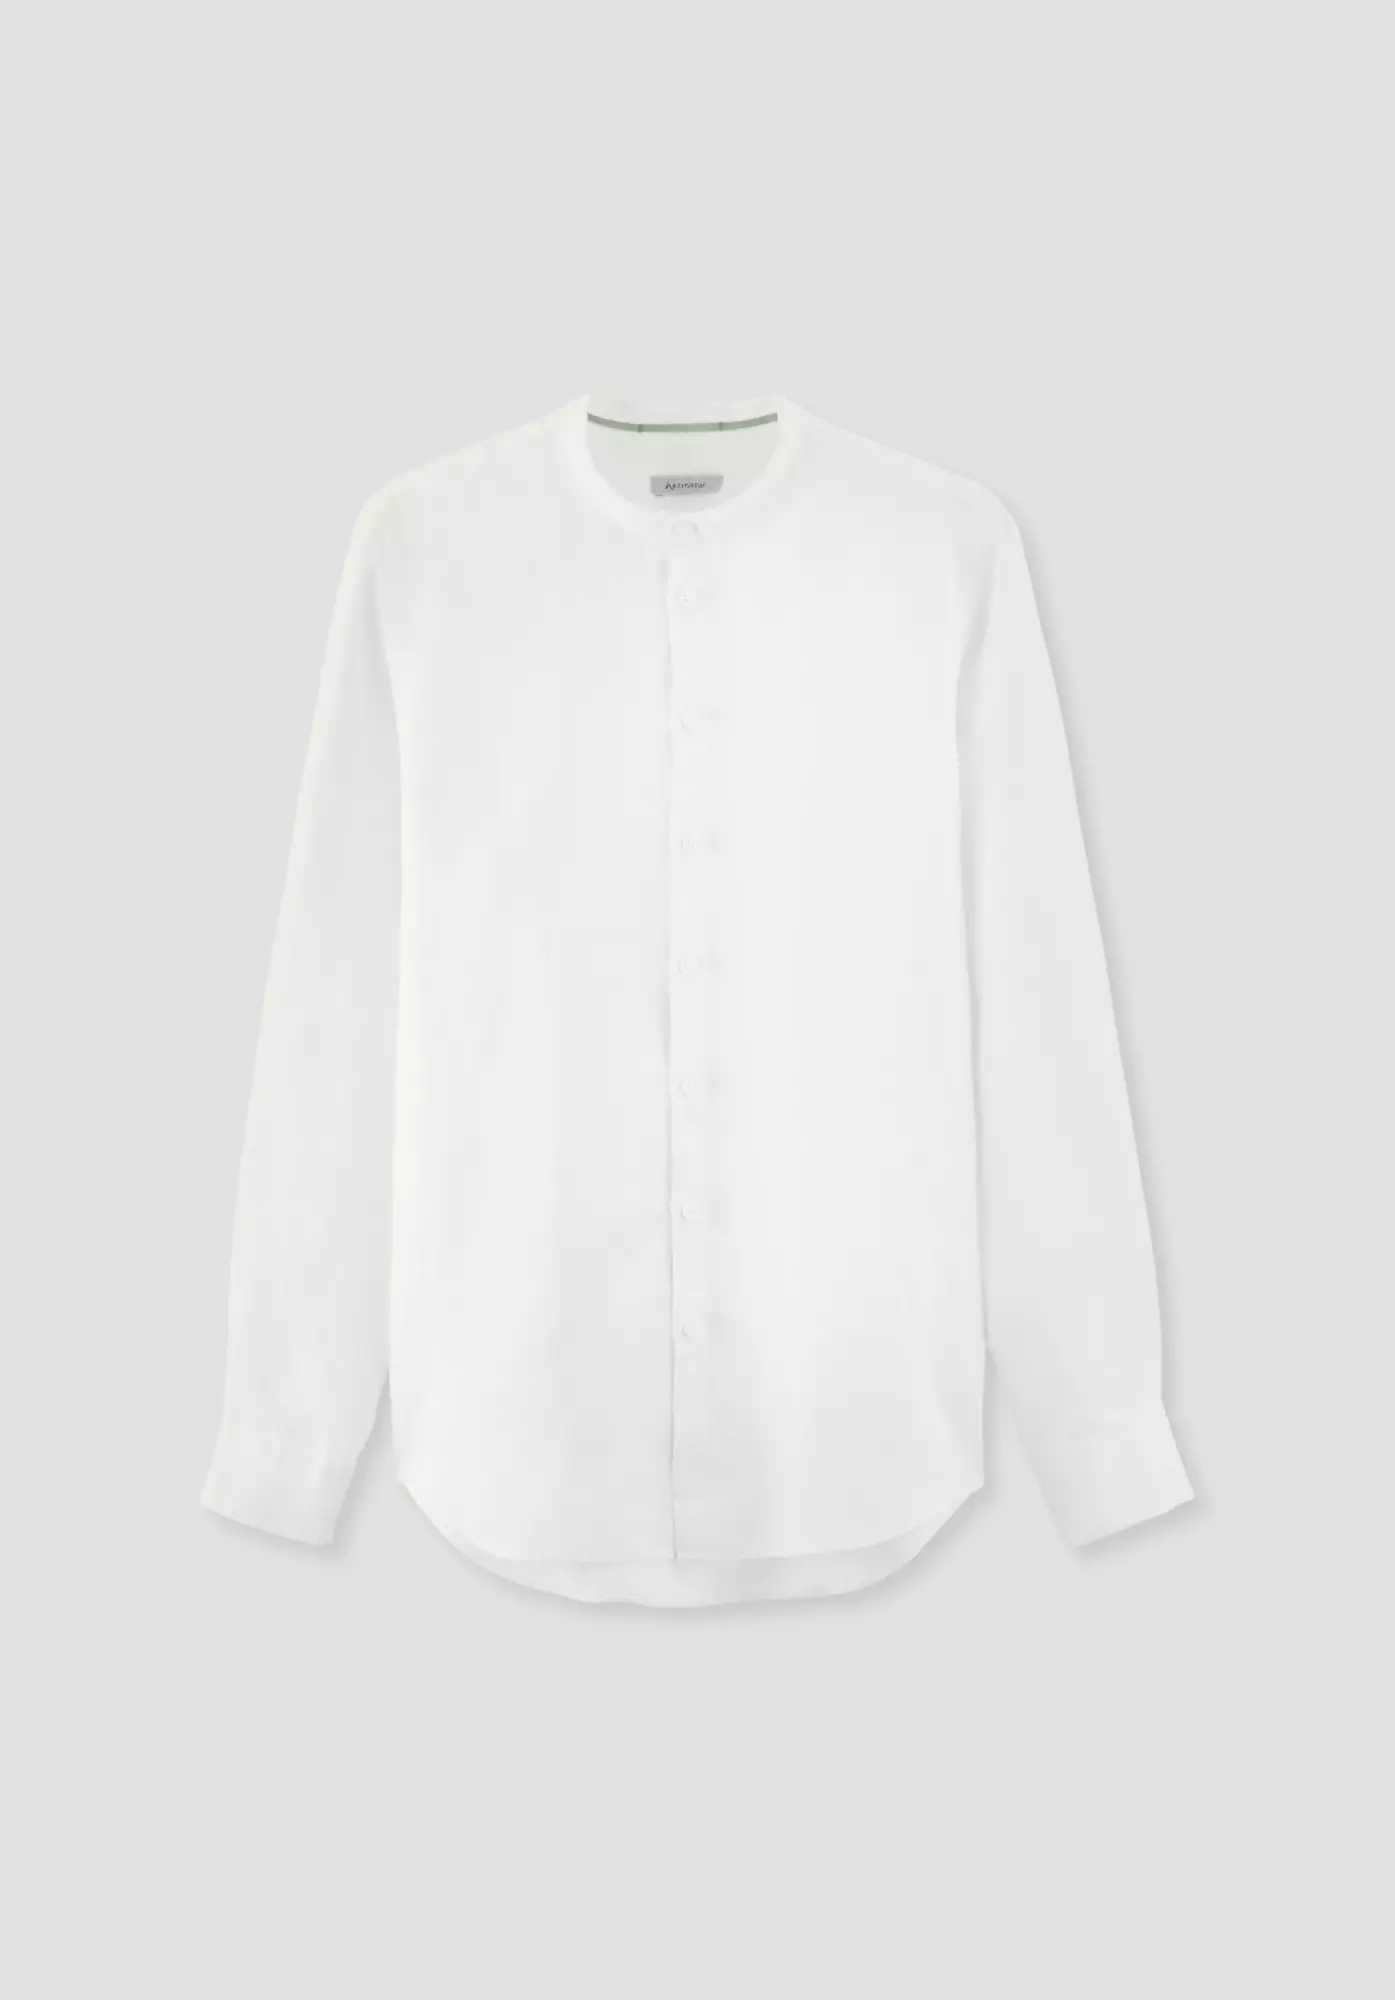 Regular shirt made of pure linen - 4